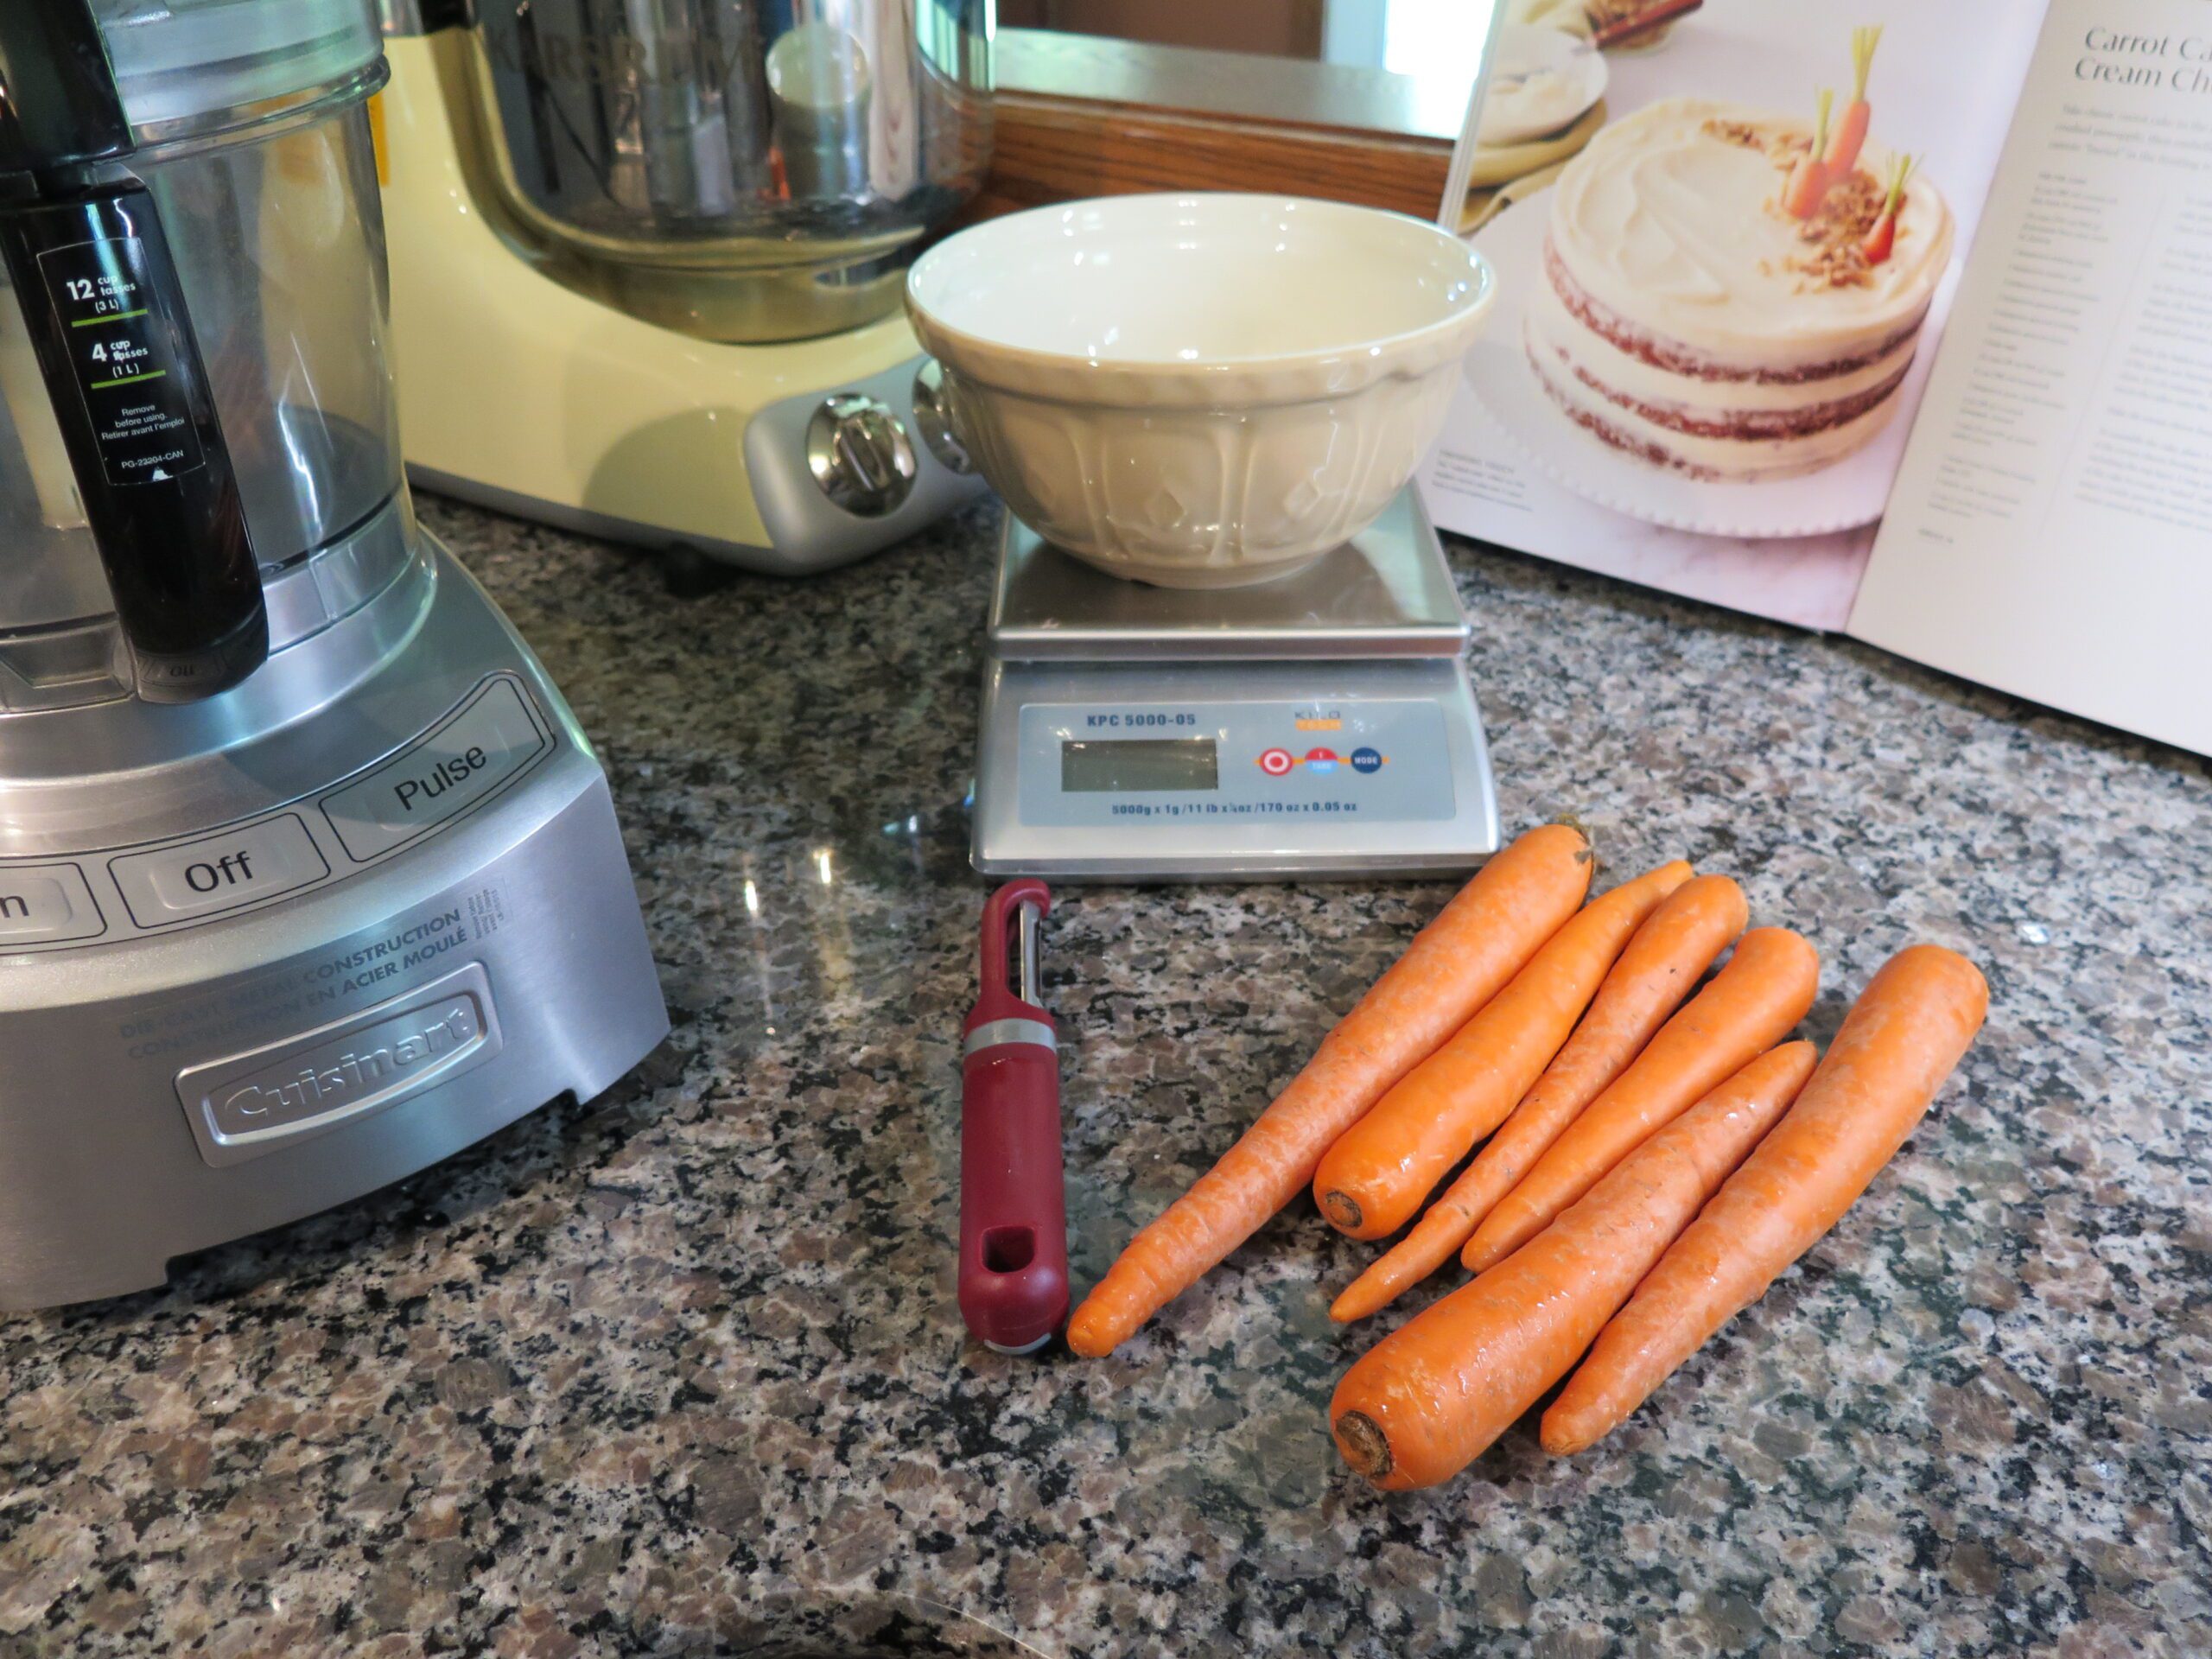 Preparing carrots for cake